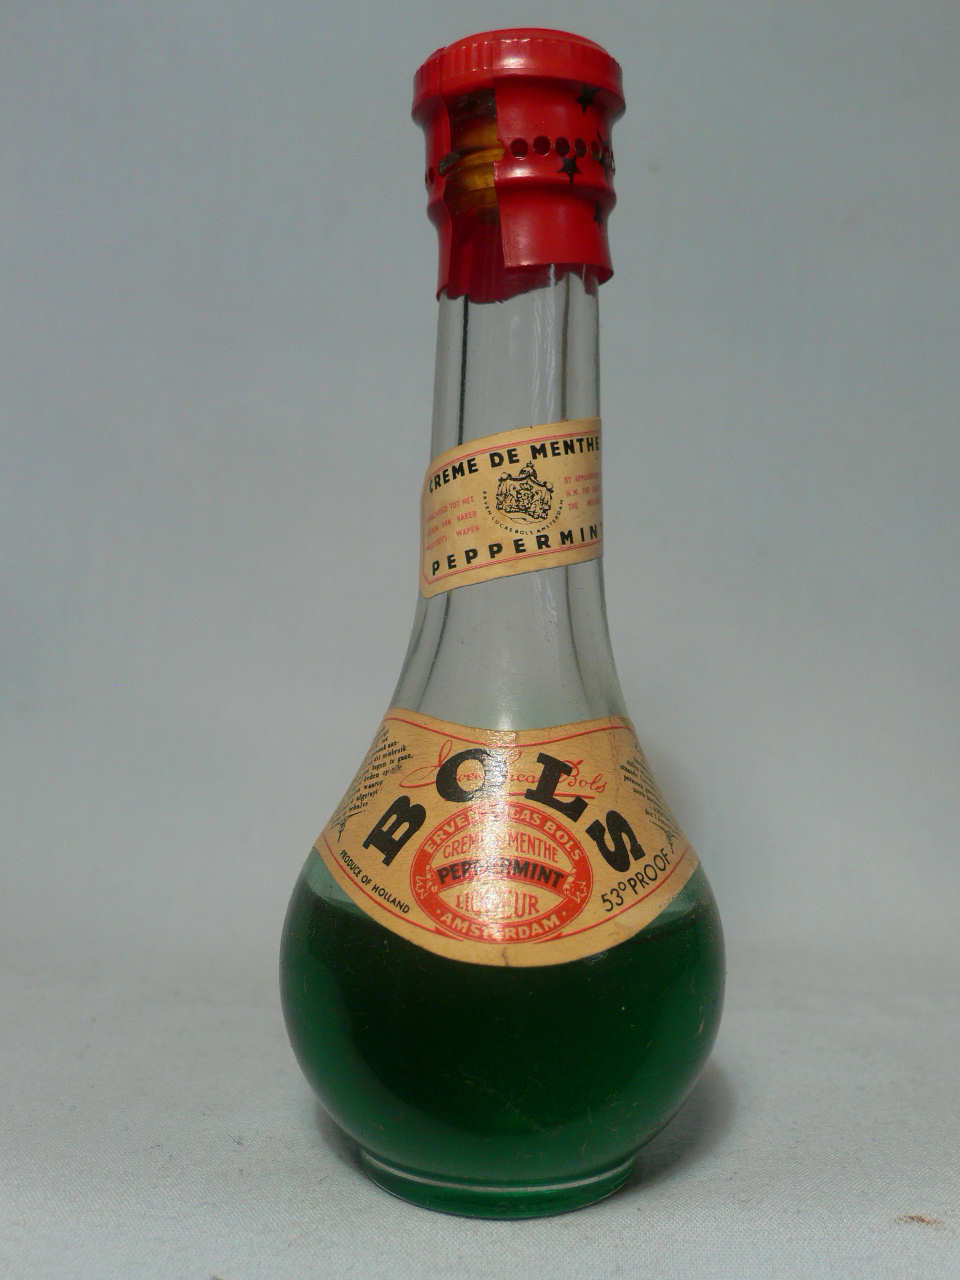 General bottle for sale - bottle code number G528